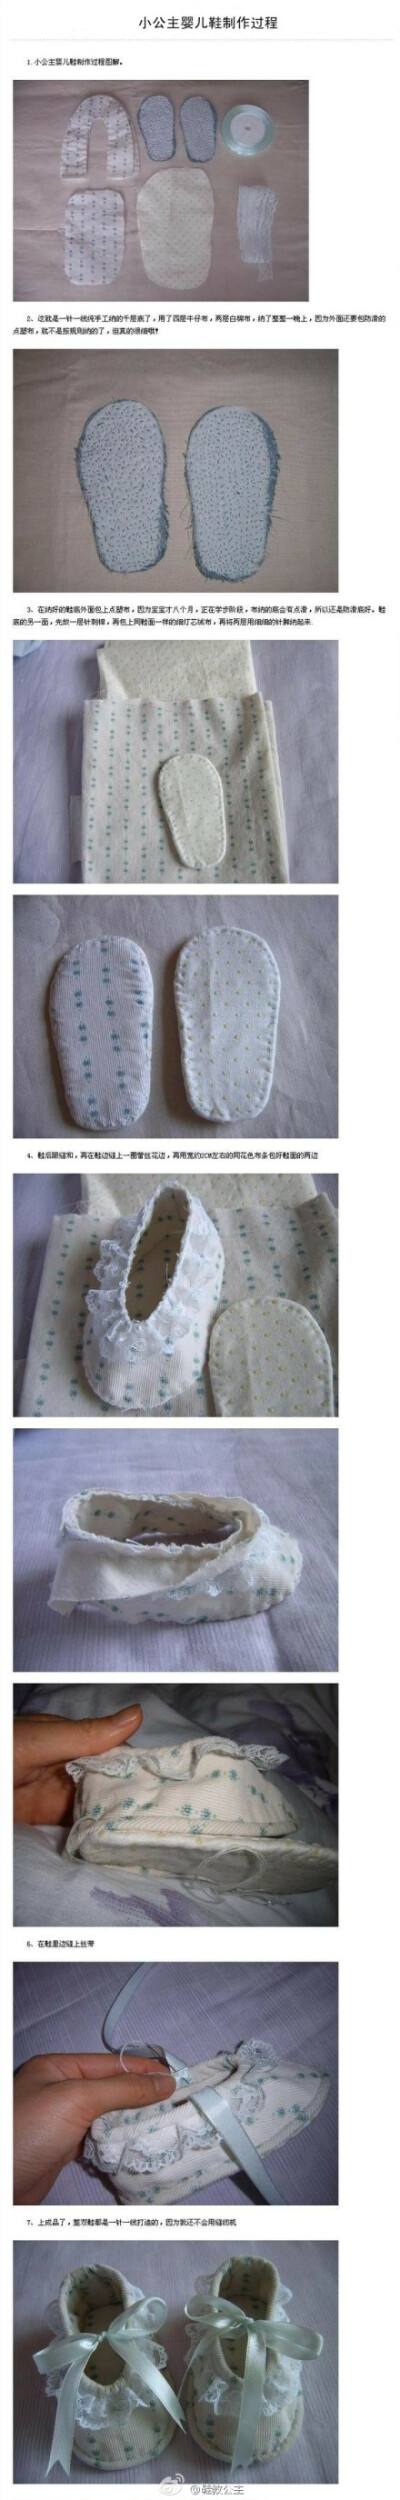 DIY小公主婴儿鞋